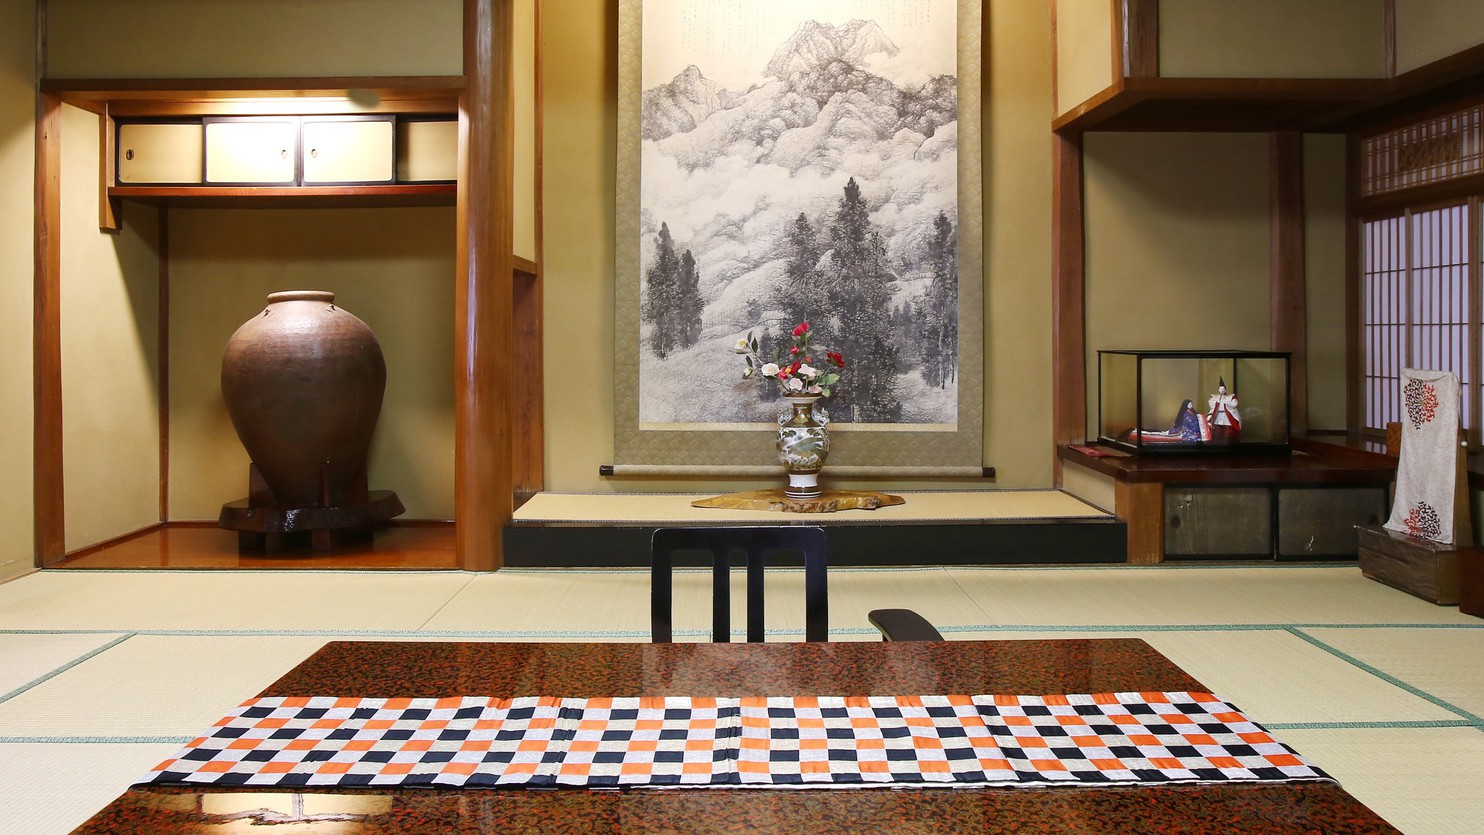 【翠玉】木曽川を望む、総檜造りの特別室。素朴で静かな佇まいの中に、歴史と和の風格が漂います。